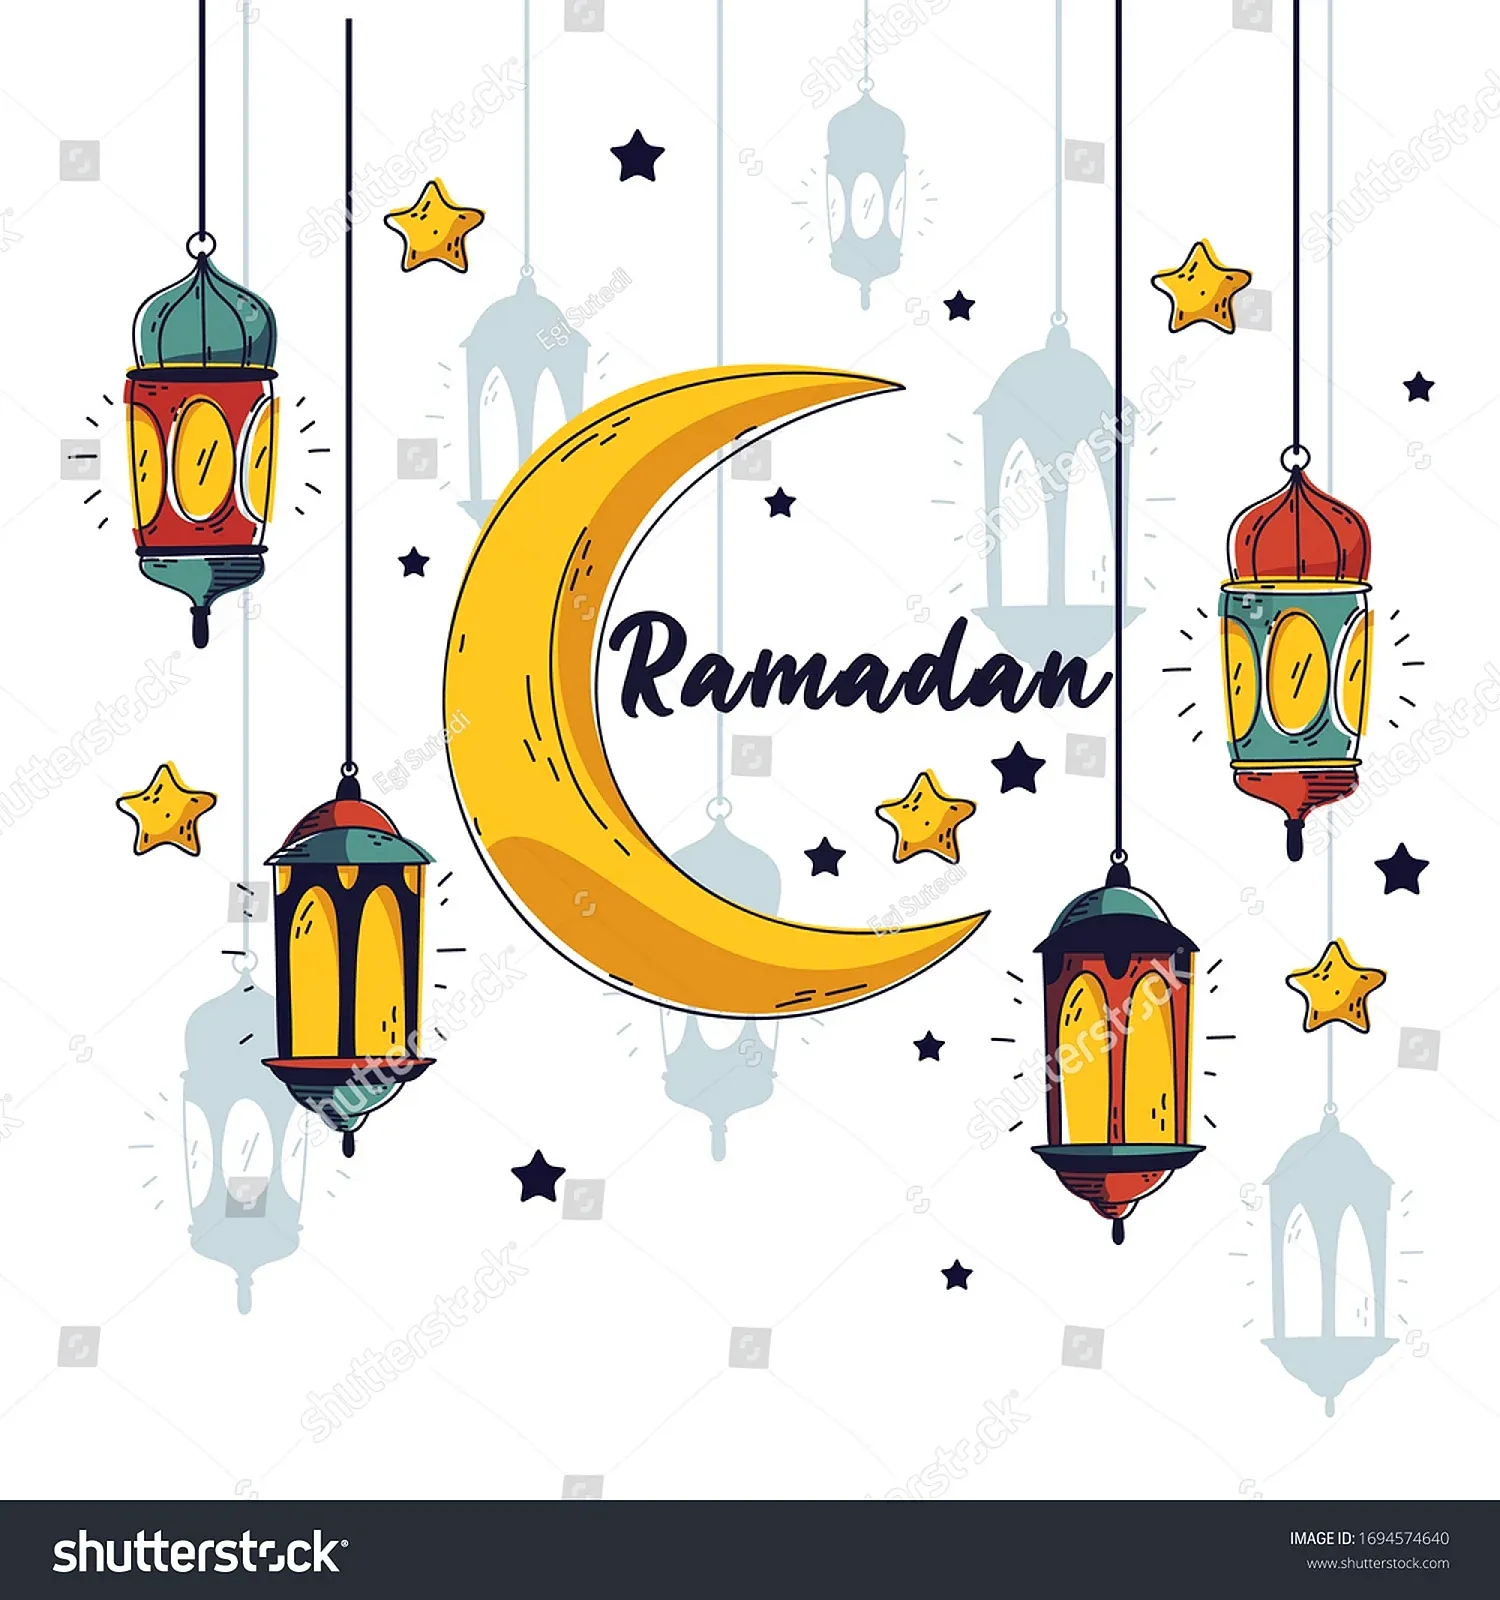 Ramadan надпись